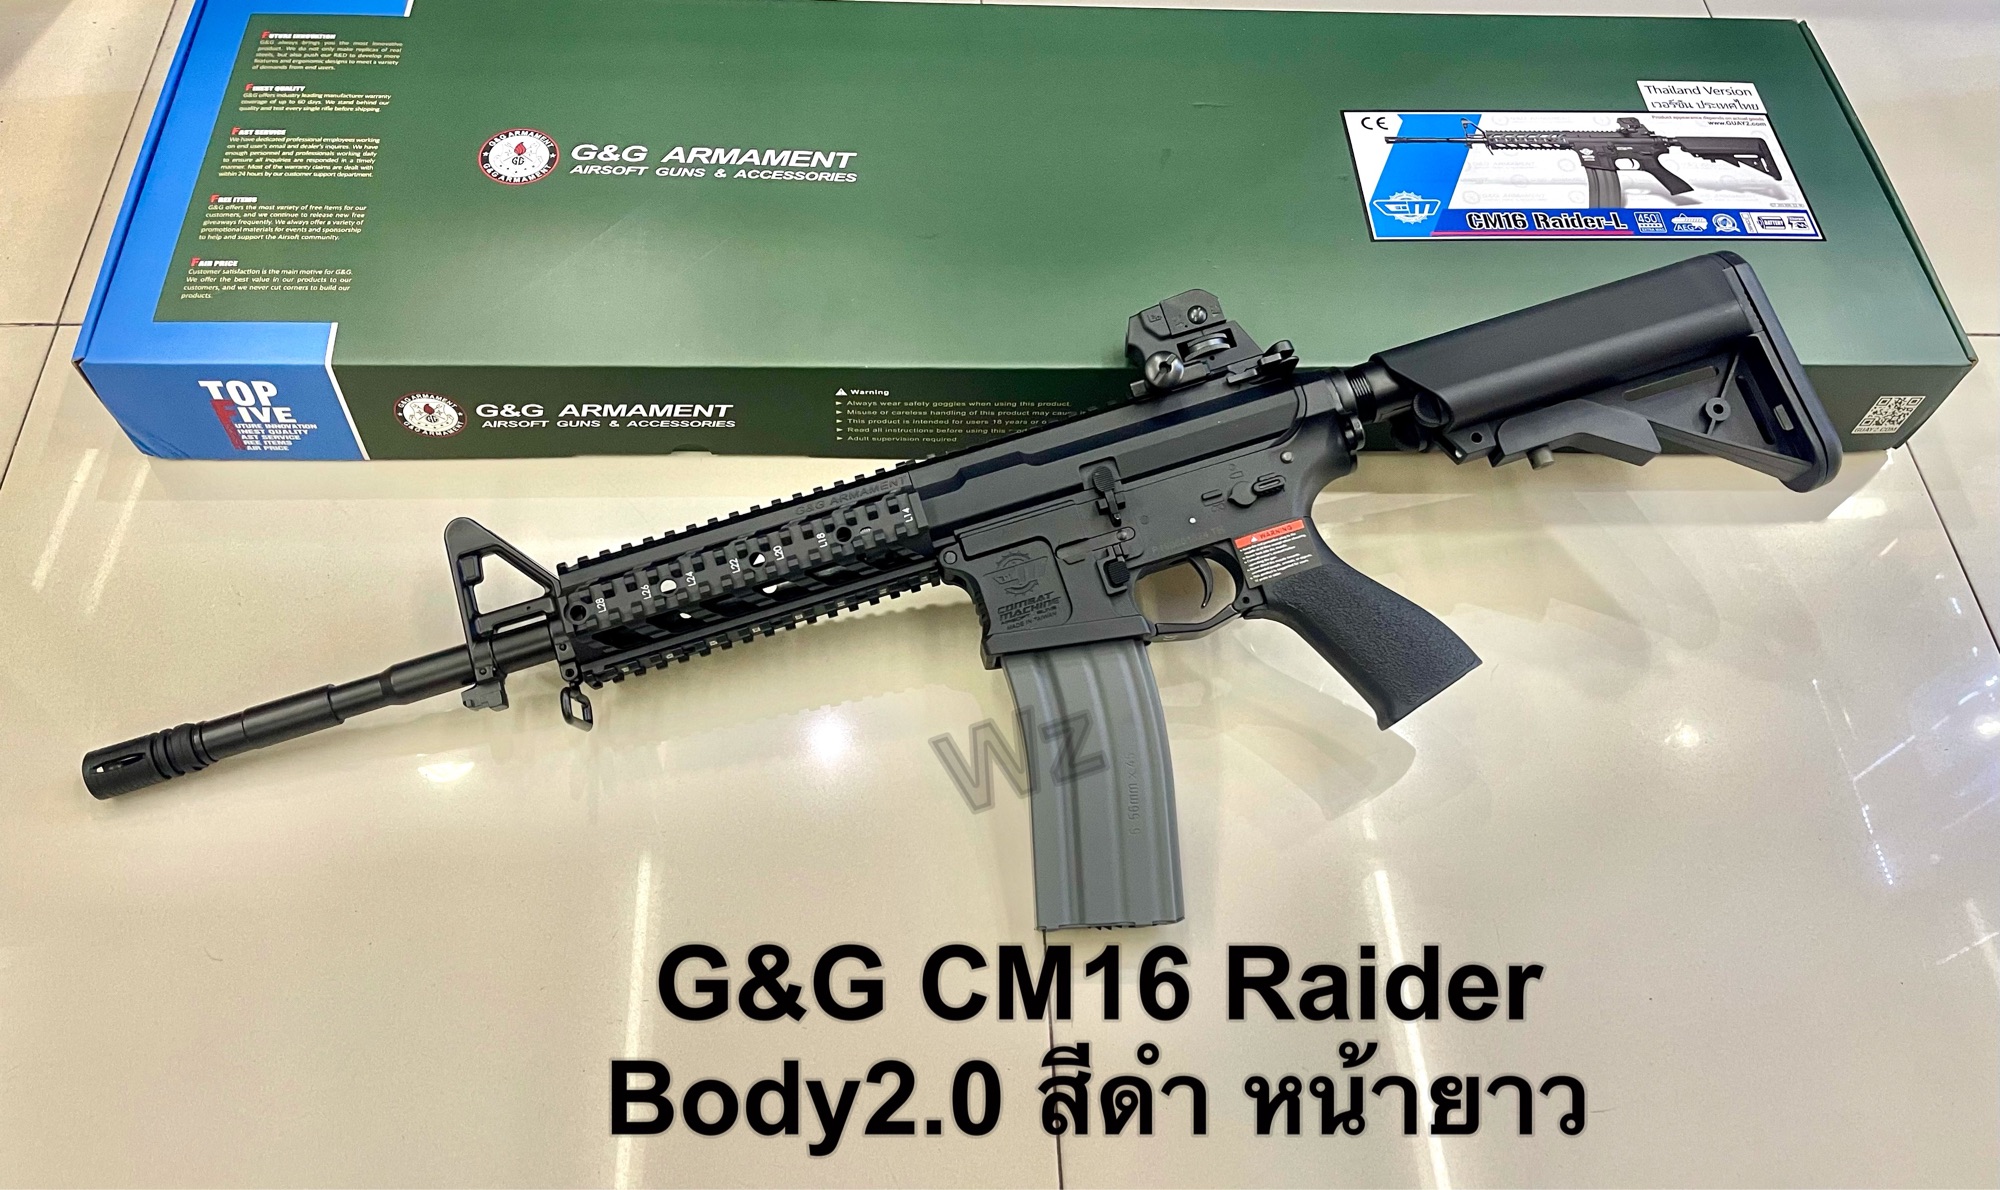 ปืนยาวปืนบีบีกัน รุ่น G&G CM16 Raider Body V.2 หน้ายาว สีดำ บอดี้ไนล่อนไฟเบอร์ น้ำหนักเบาคล่องตัว มือ1 เก็บเงินปลายทางได้